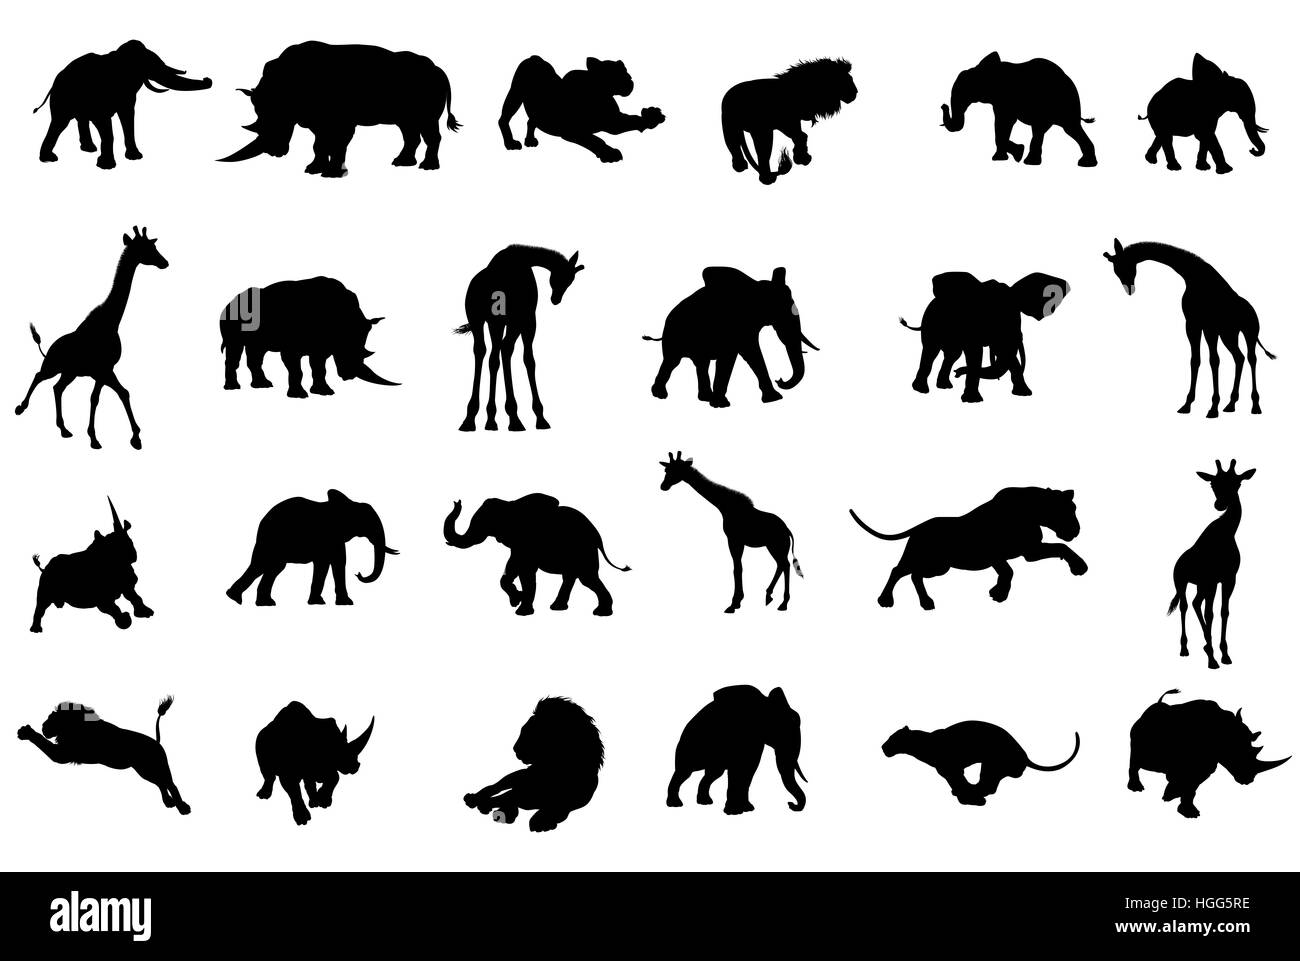 Un safari Africano silhouette di animali tra cui elefanti, giraffe, rinoceronti e leoni Foto Stock